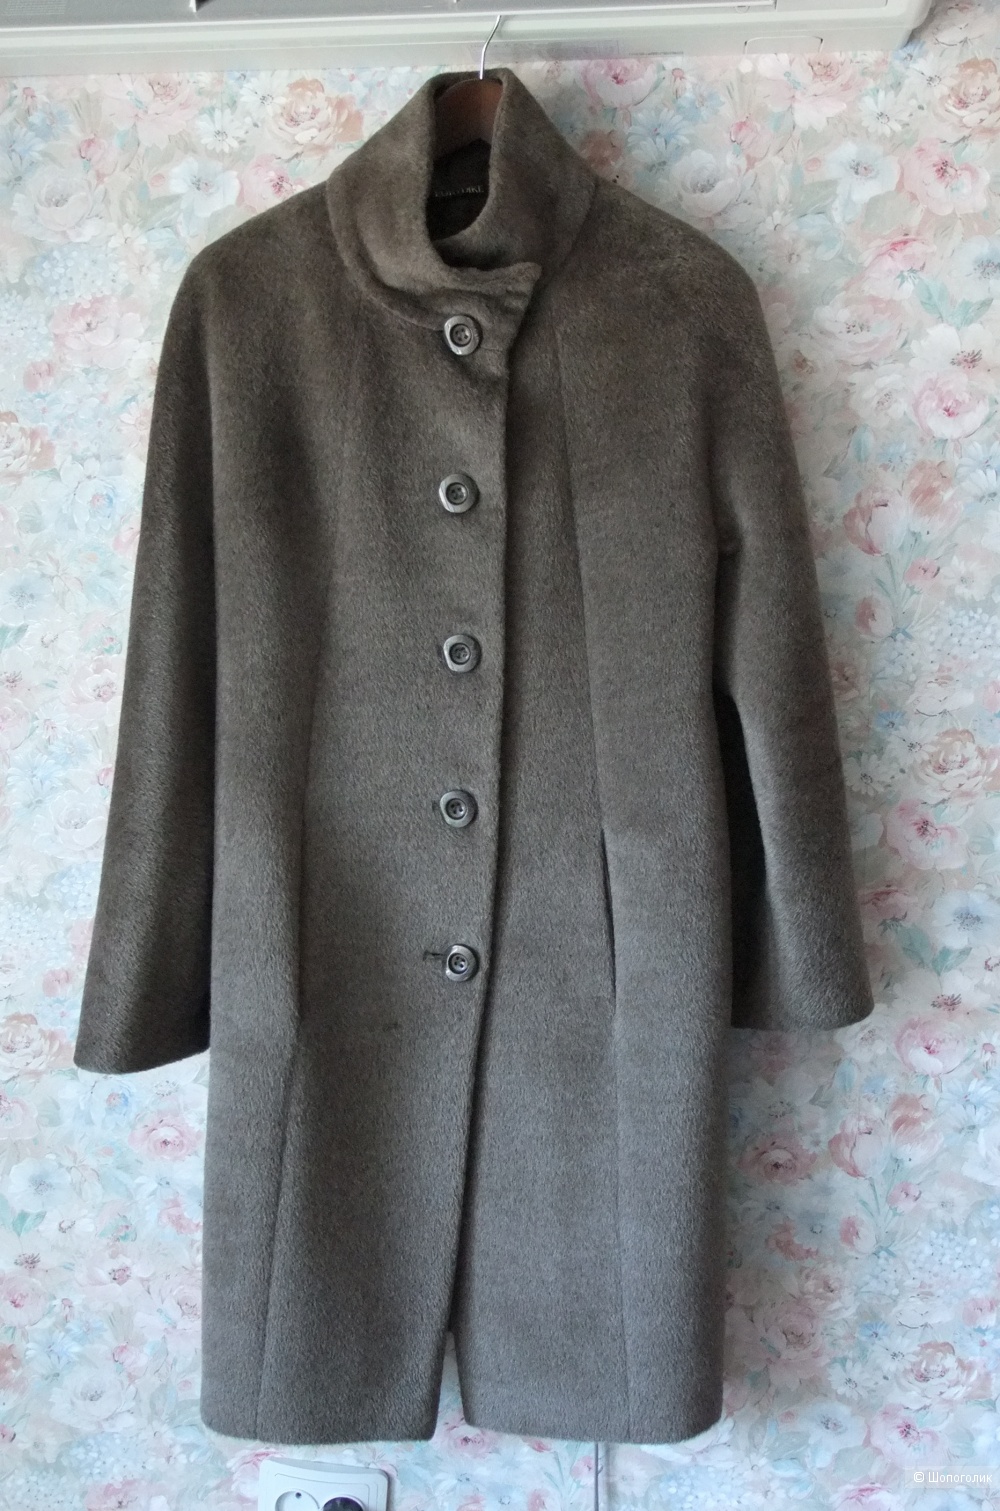 Пальто EURYDIKE babysuri alpaca-42 размер